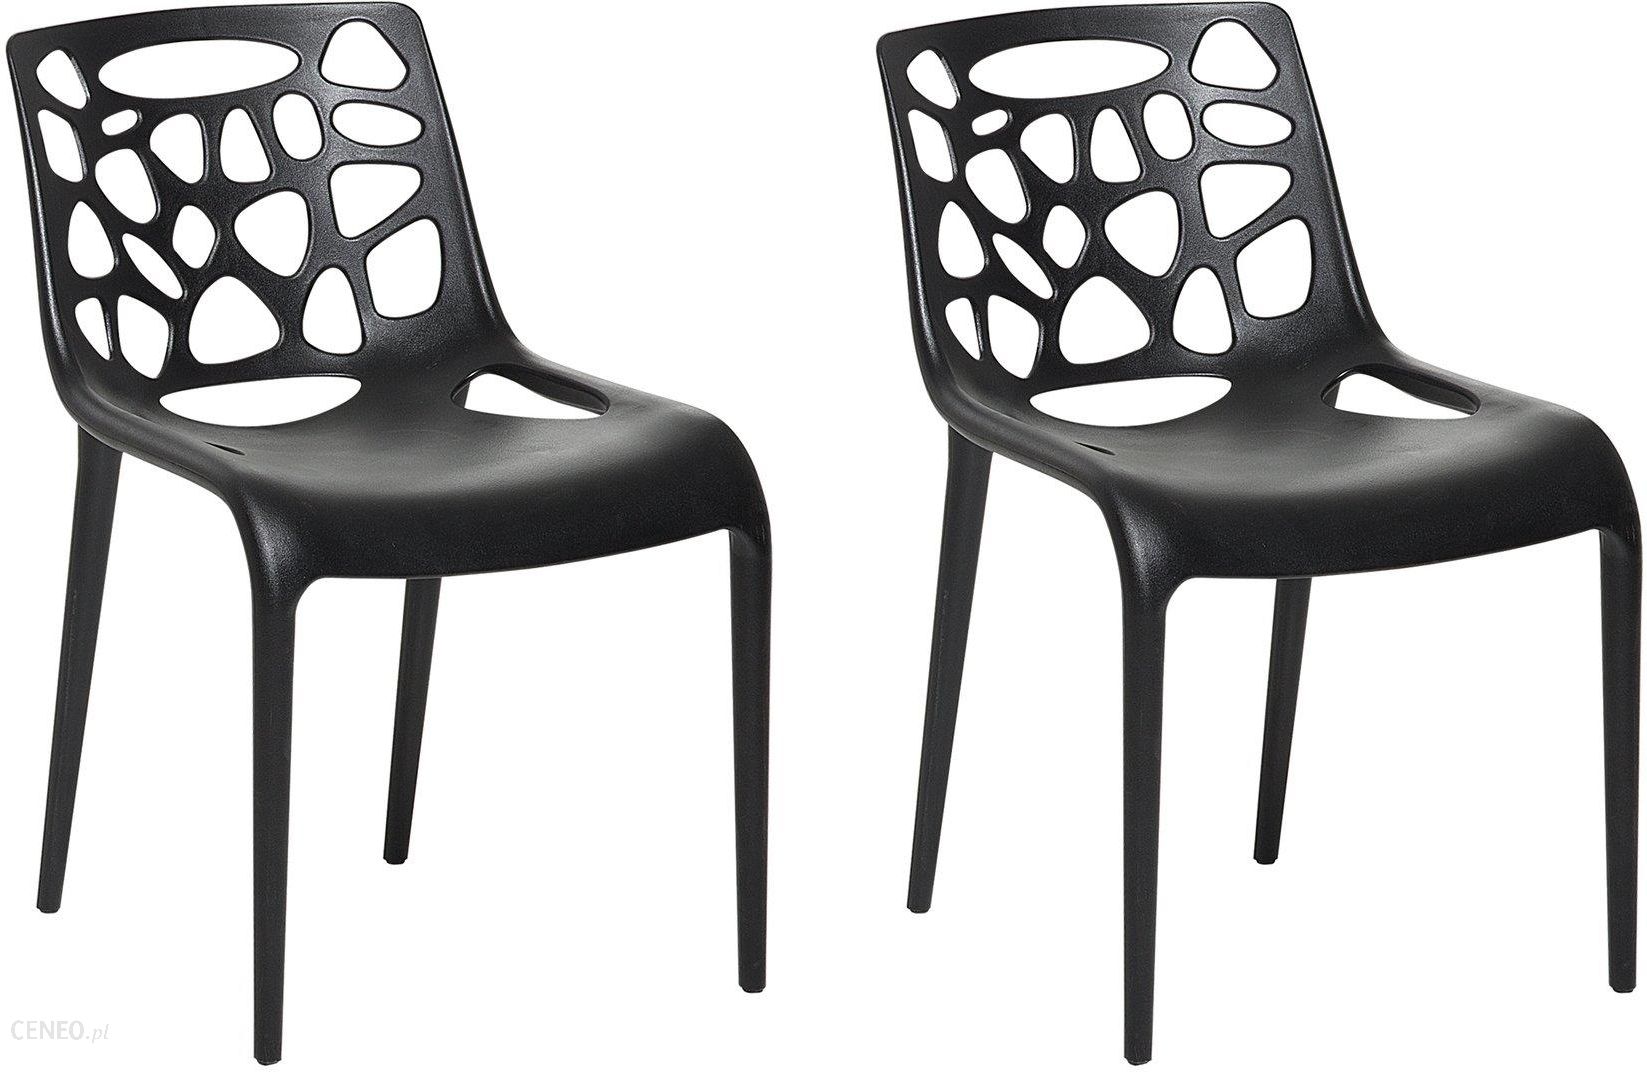 Beliani Krzeslo Ogrodowe Plastikowe Czarne Krzeslo Z Tworzywa Sztucznego Morgan Opinie I Atrakcyjne Ceny Na Ceneo Pl